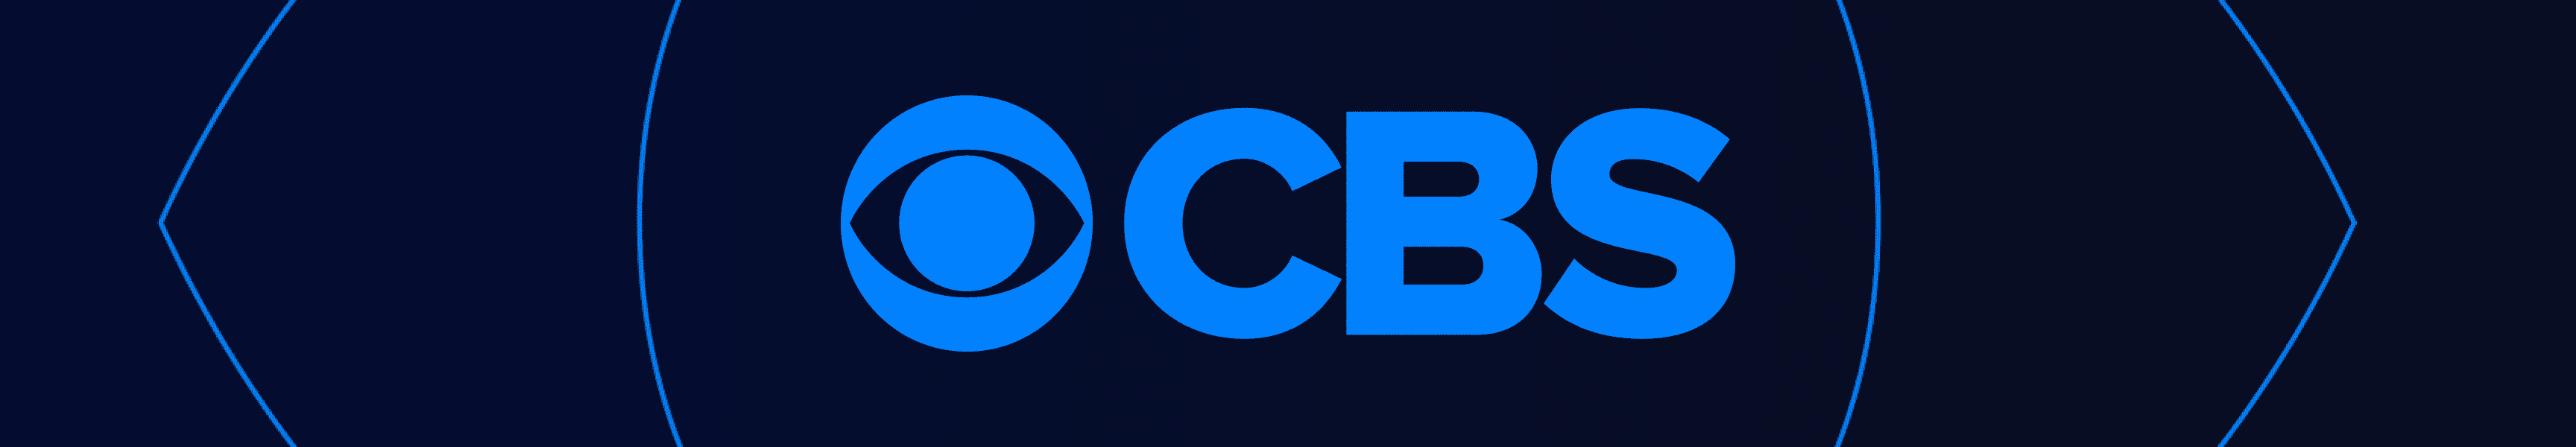 CBS Unterhaltung 